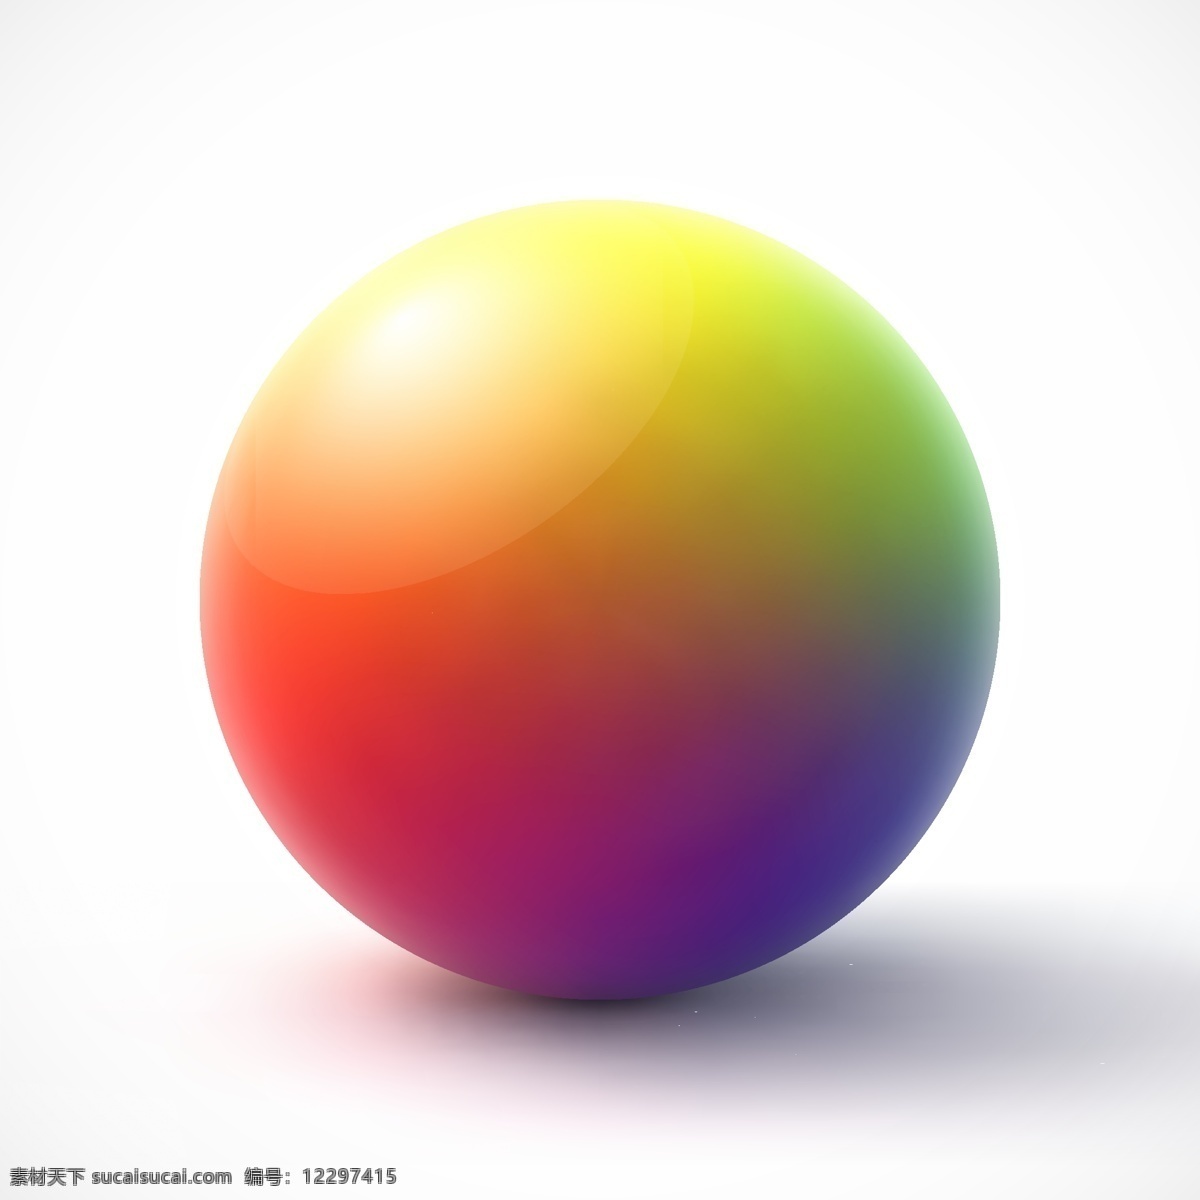 圆球矢量图片 圆球 红色球体 球立体球 球体 矢量 高清图片